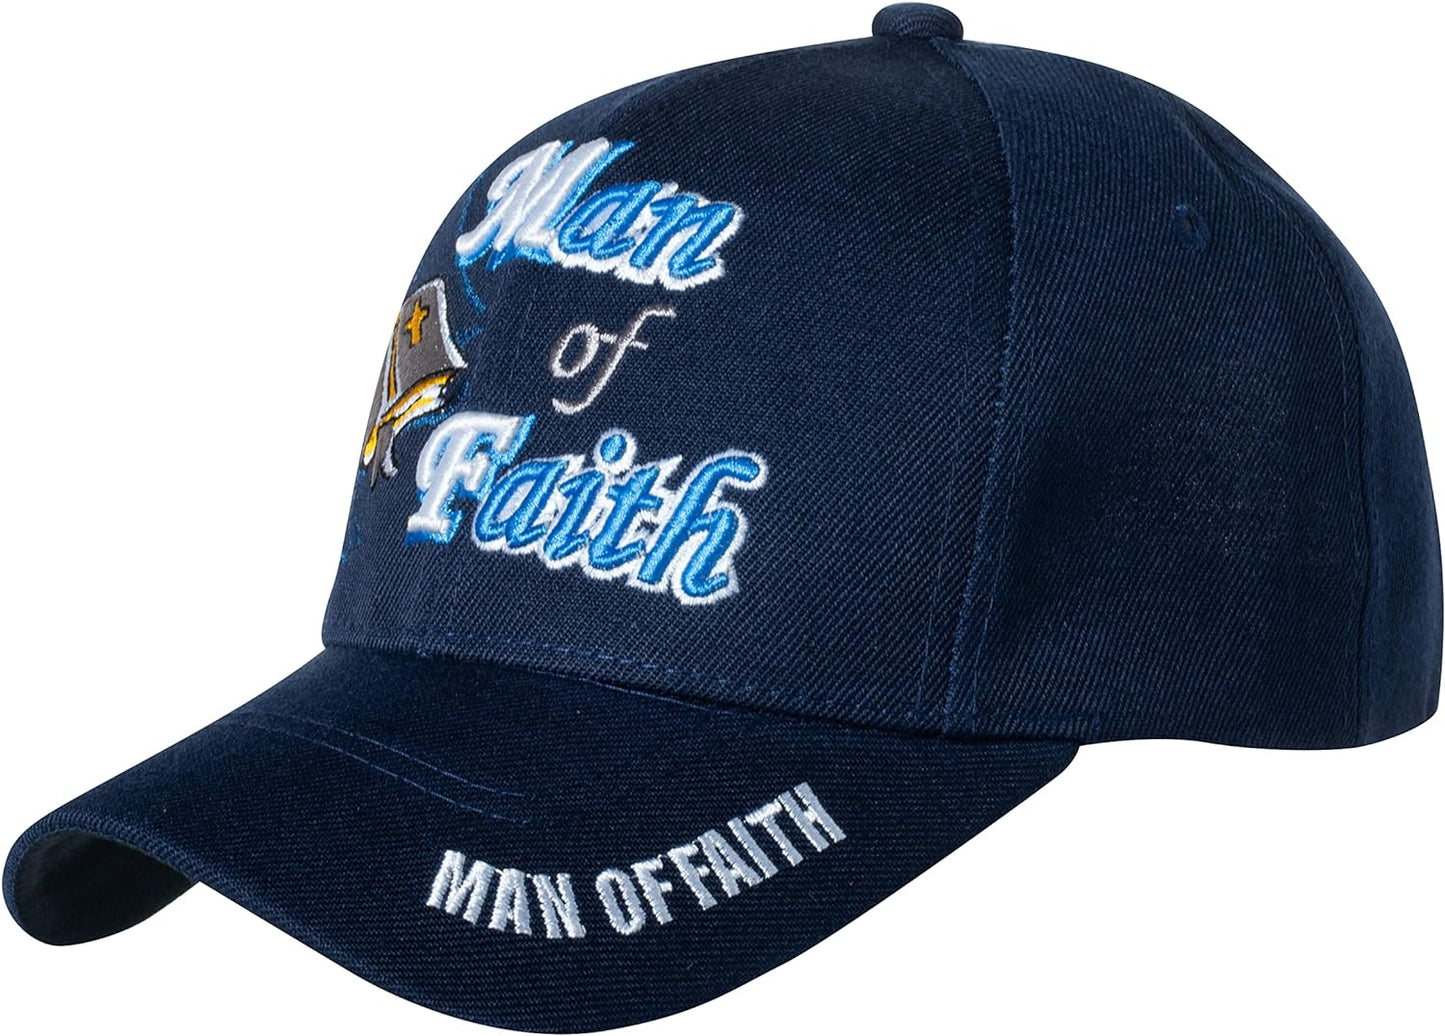 Man of Faith Christian Hat claimedbygoddesigns